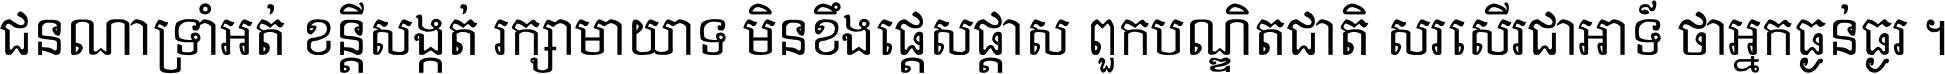 Khmer Chhay Text 1